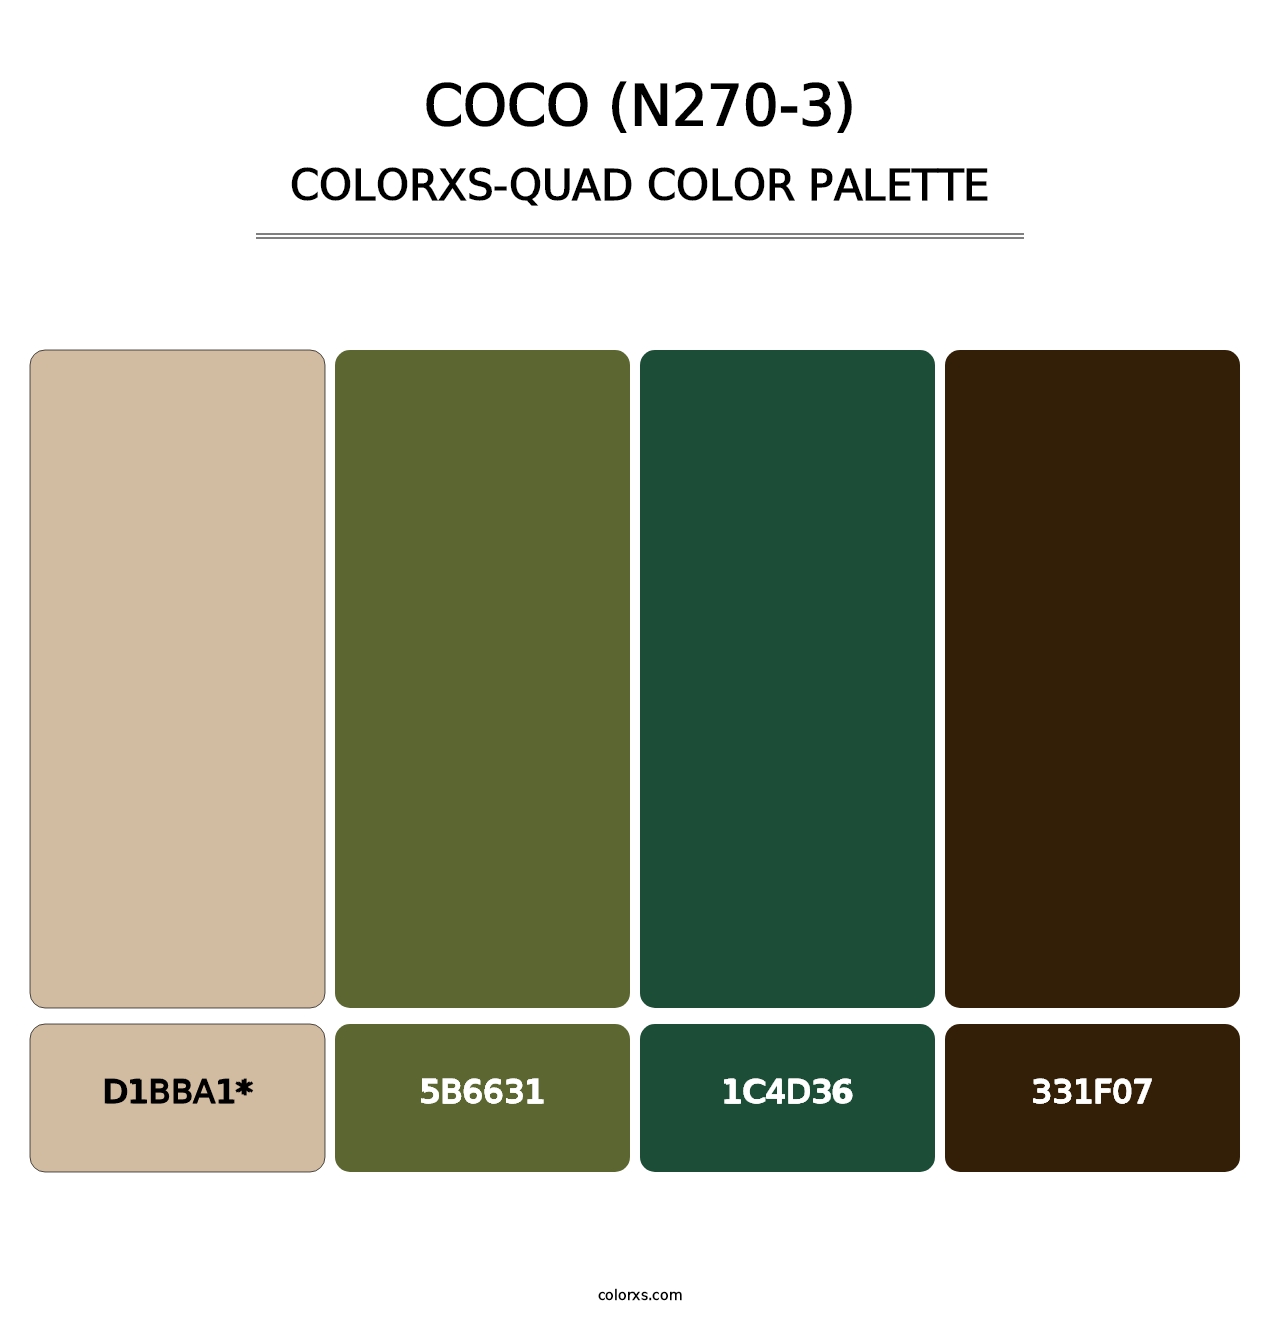 Coco (N270-3) - Colorxs Quad Palette